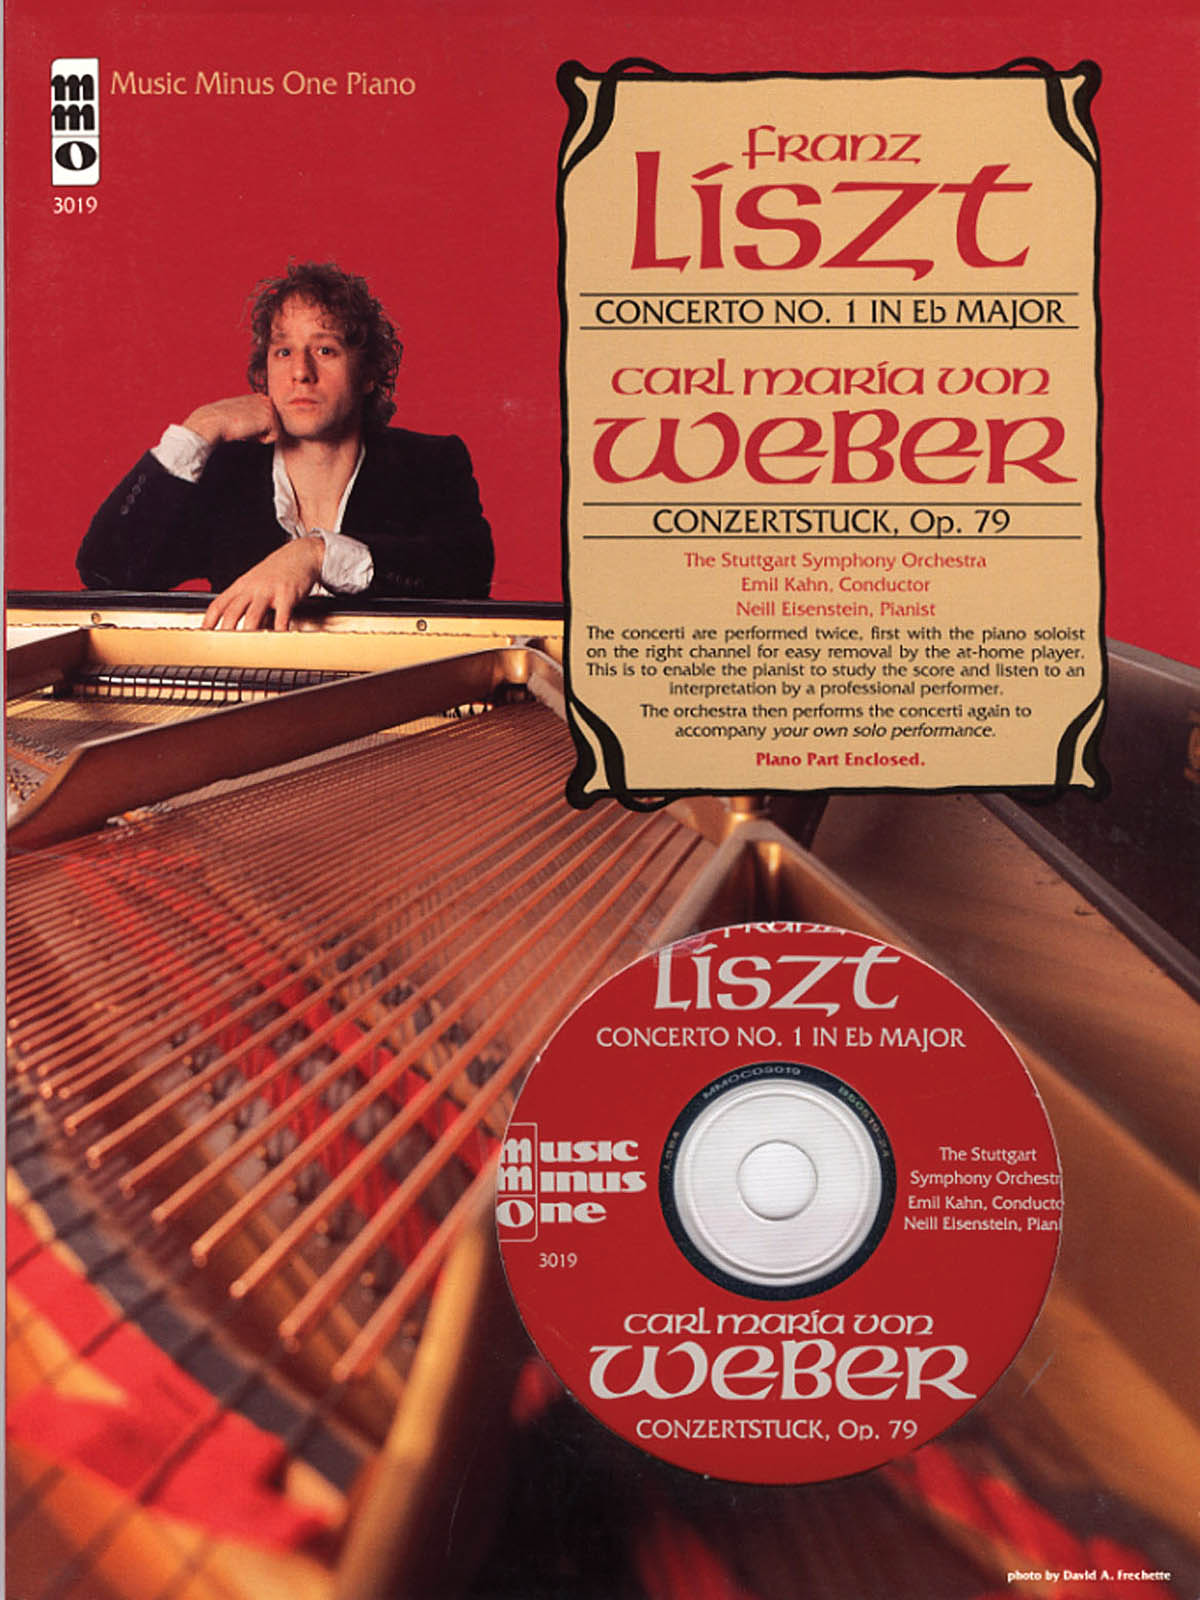 Franz Liszt Carl Maria von Weber: Liszt Concerto No. 1 & von Weber Concertstuck: